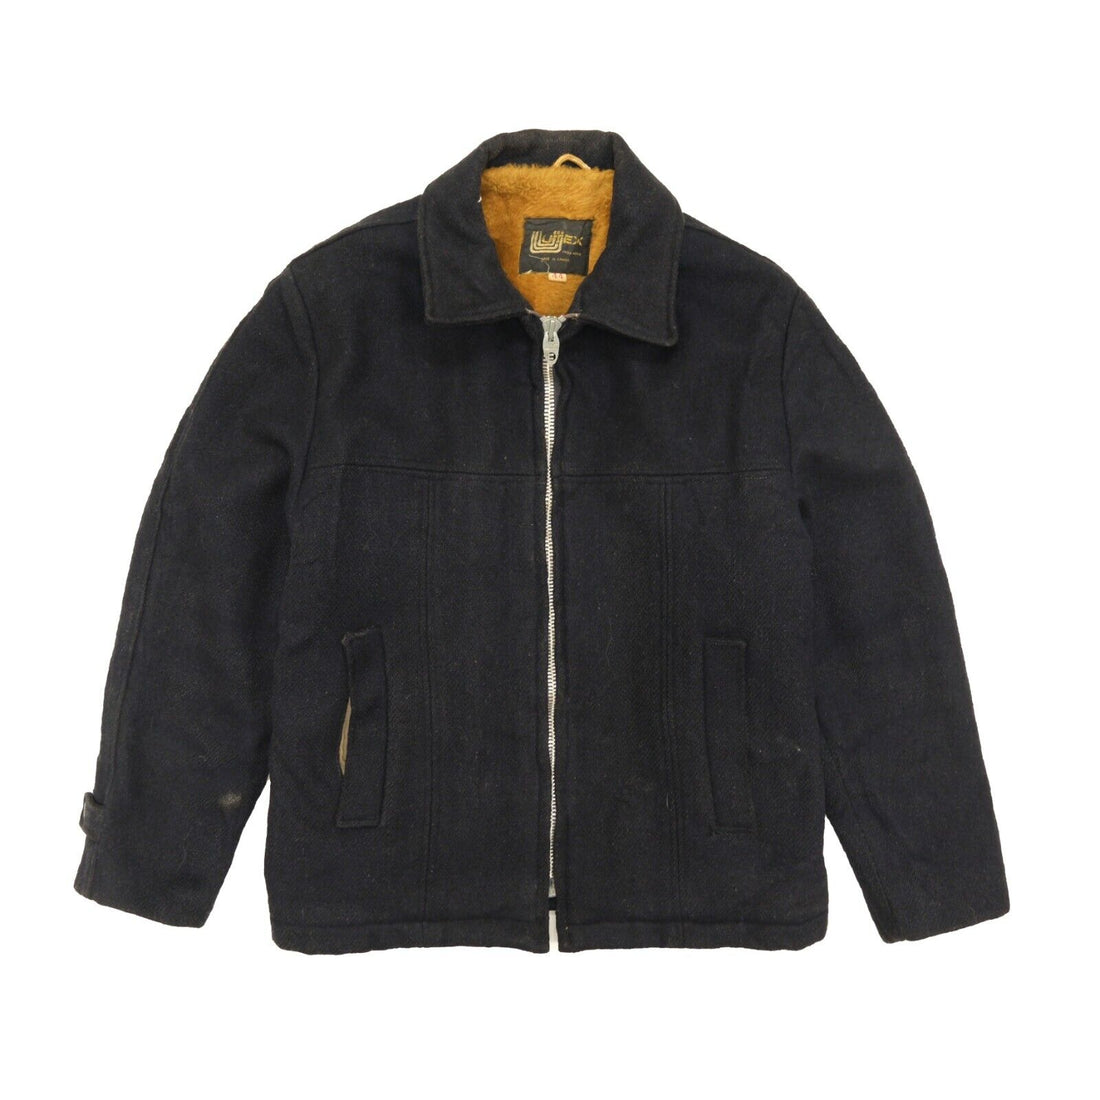 Vintage Utex Wool Coat Jacket Size 44 Lightning Zip Union Made